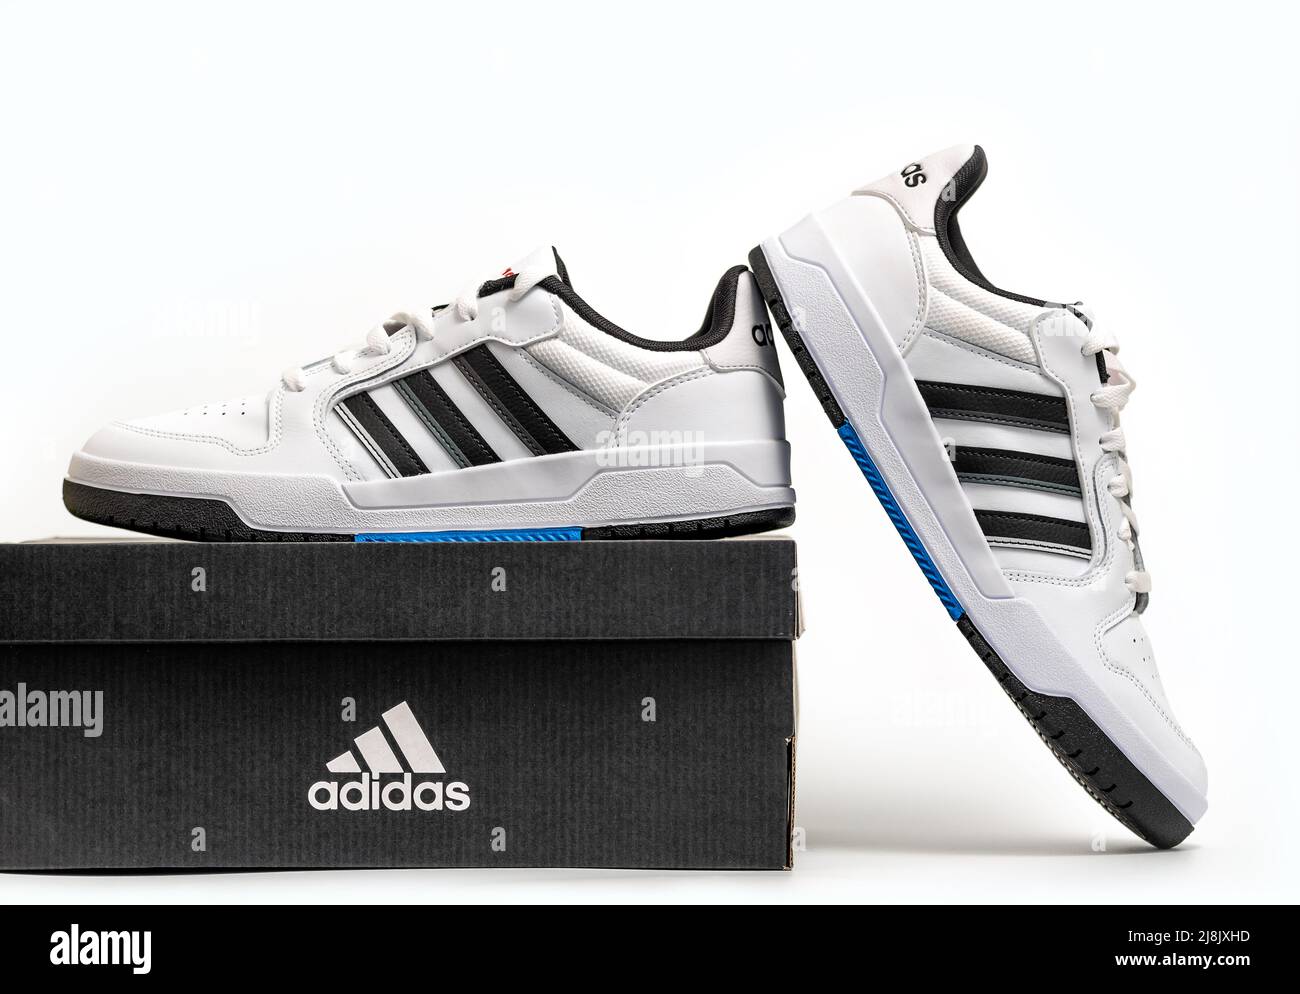 Adidas turnschuhe -Fotos und -Bildmaterial in hoher Auflösung – Alamy